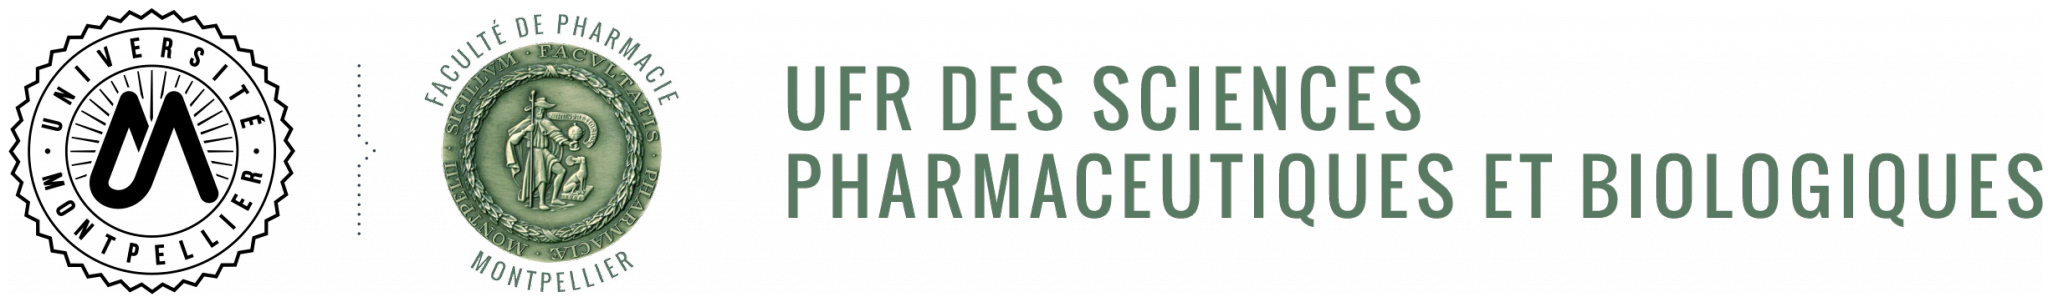 Intervention – 22 mars 2019 – Faculté de Pharmacie de Montpellier